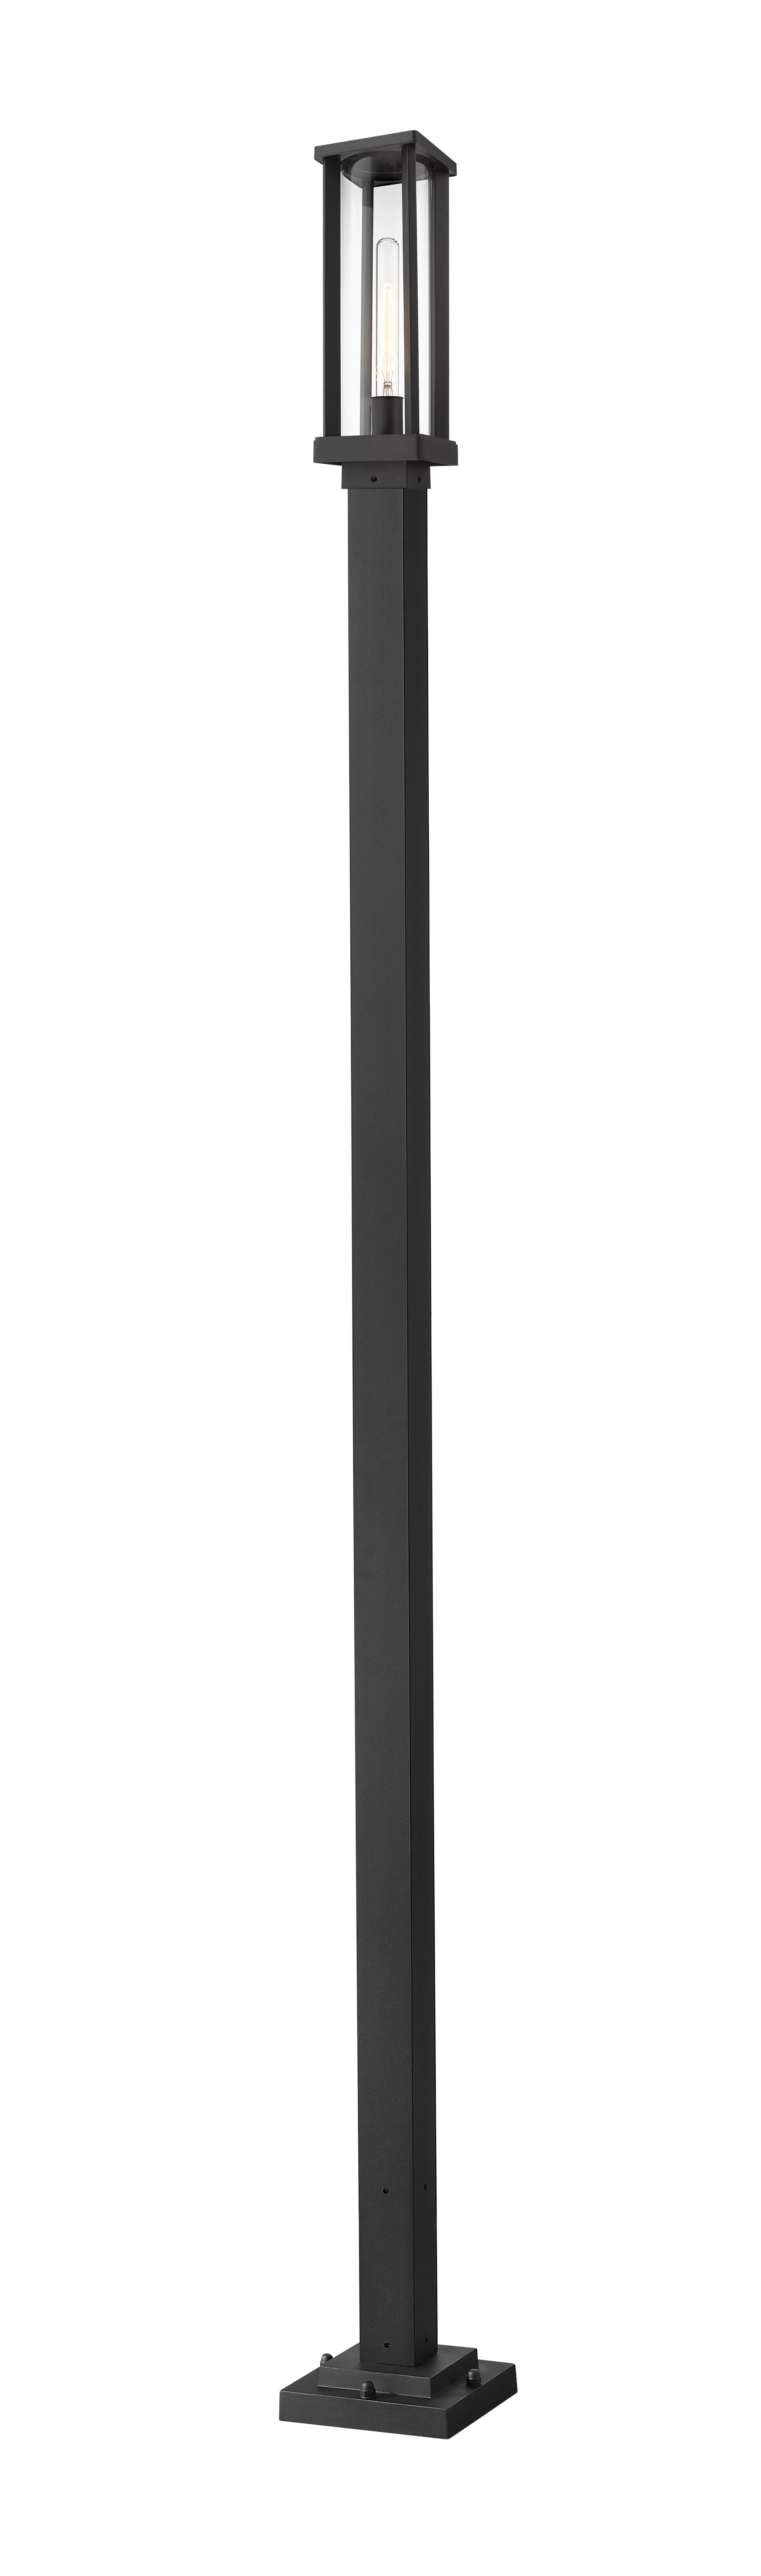 Glenwood 1-Light Outdoor Post Mounted Fixture Light In Black